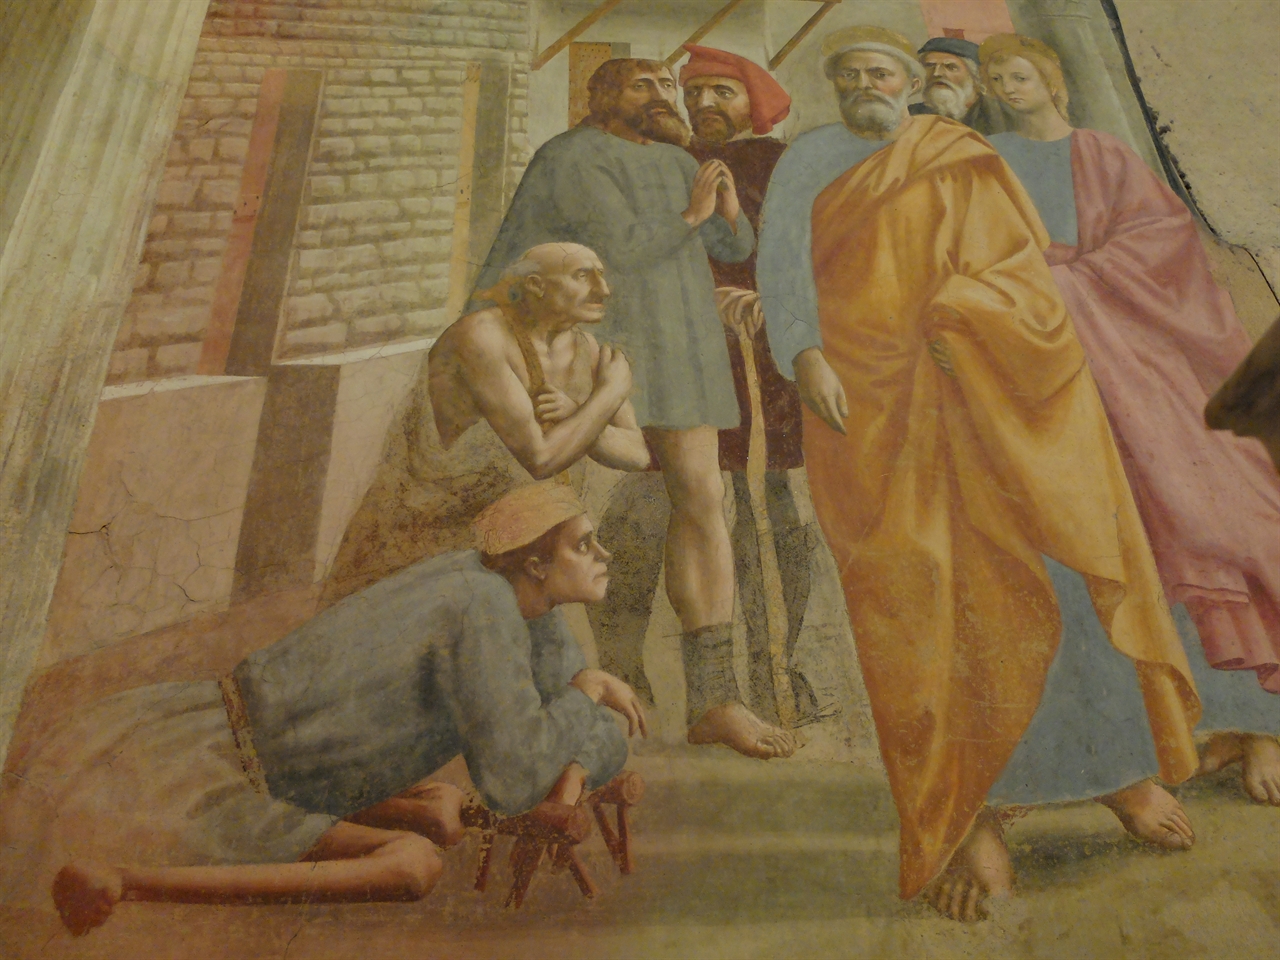 마사초 '그림자로 병자를 고치는 성 베드로' 피렌체, 브랑카치 예배당. 헐벗은 늙은이와 앉은뱅이. 성화에 저렇게 미천한 인물까지 묘사한 것은 마사초가 거의 처음입니다.